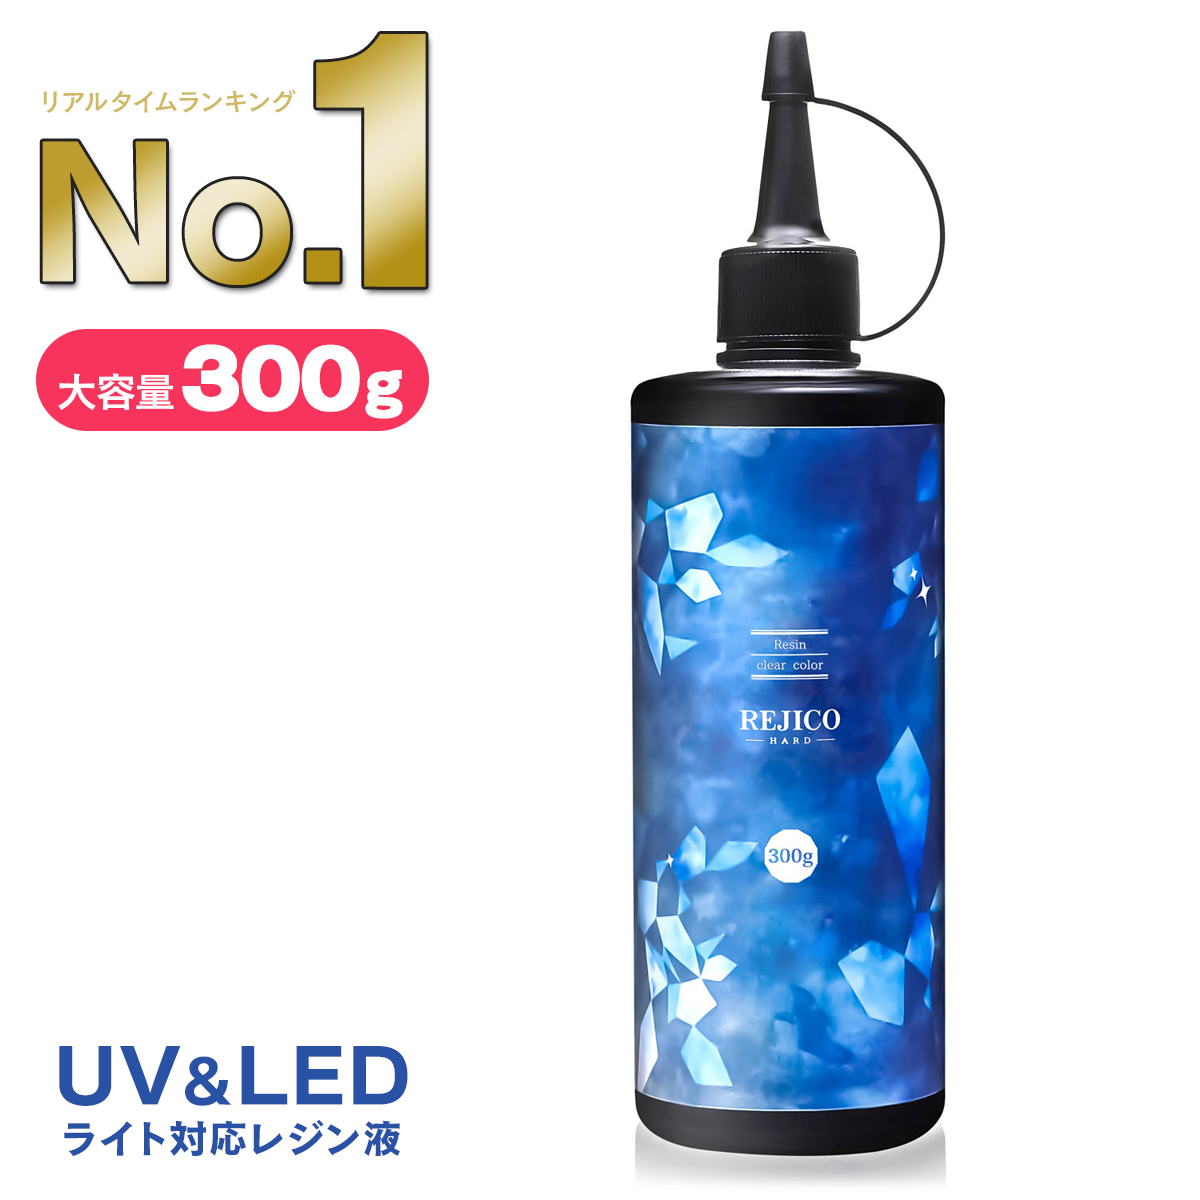 ハードタイプのUV-LED対応レジン液 300g “これが欲しかった” を詰め込んだコストパフォーマンスを追求したレジン液 ”REJICO” がついに登場 送料無料 レジコ ハードタイプ 日本全国 日本製 REJICO UV-LED対応 レジン液 大容量 【アウトレット送料無料】